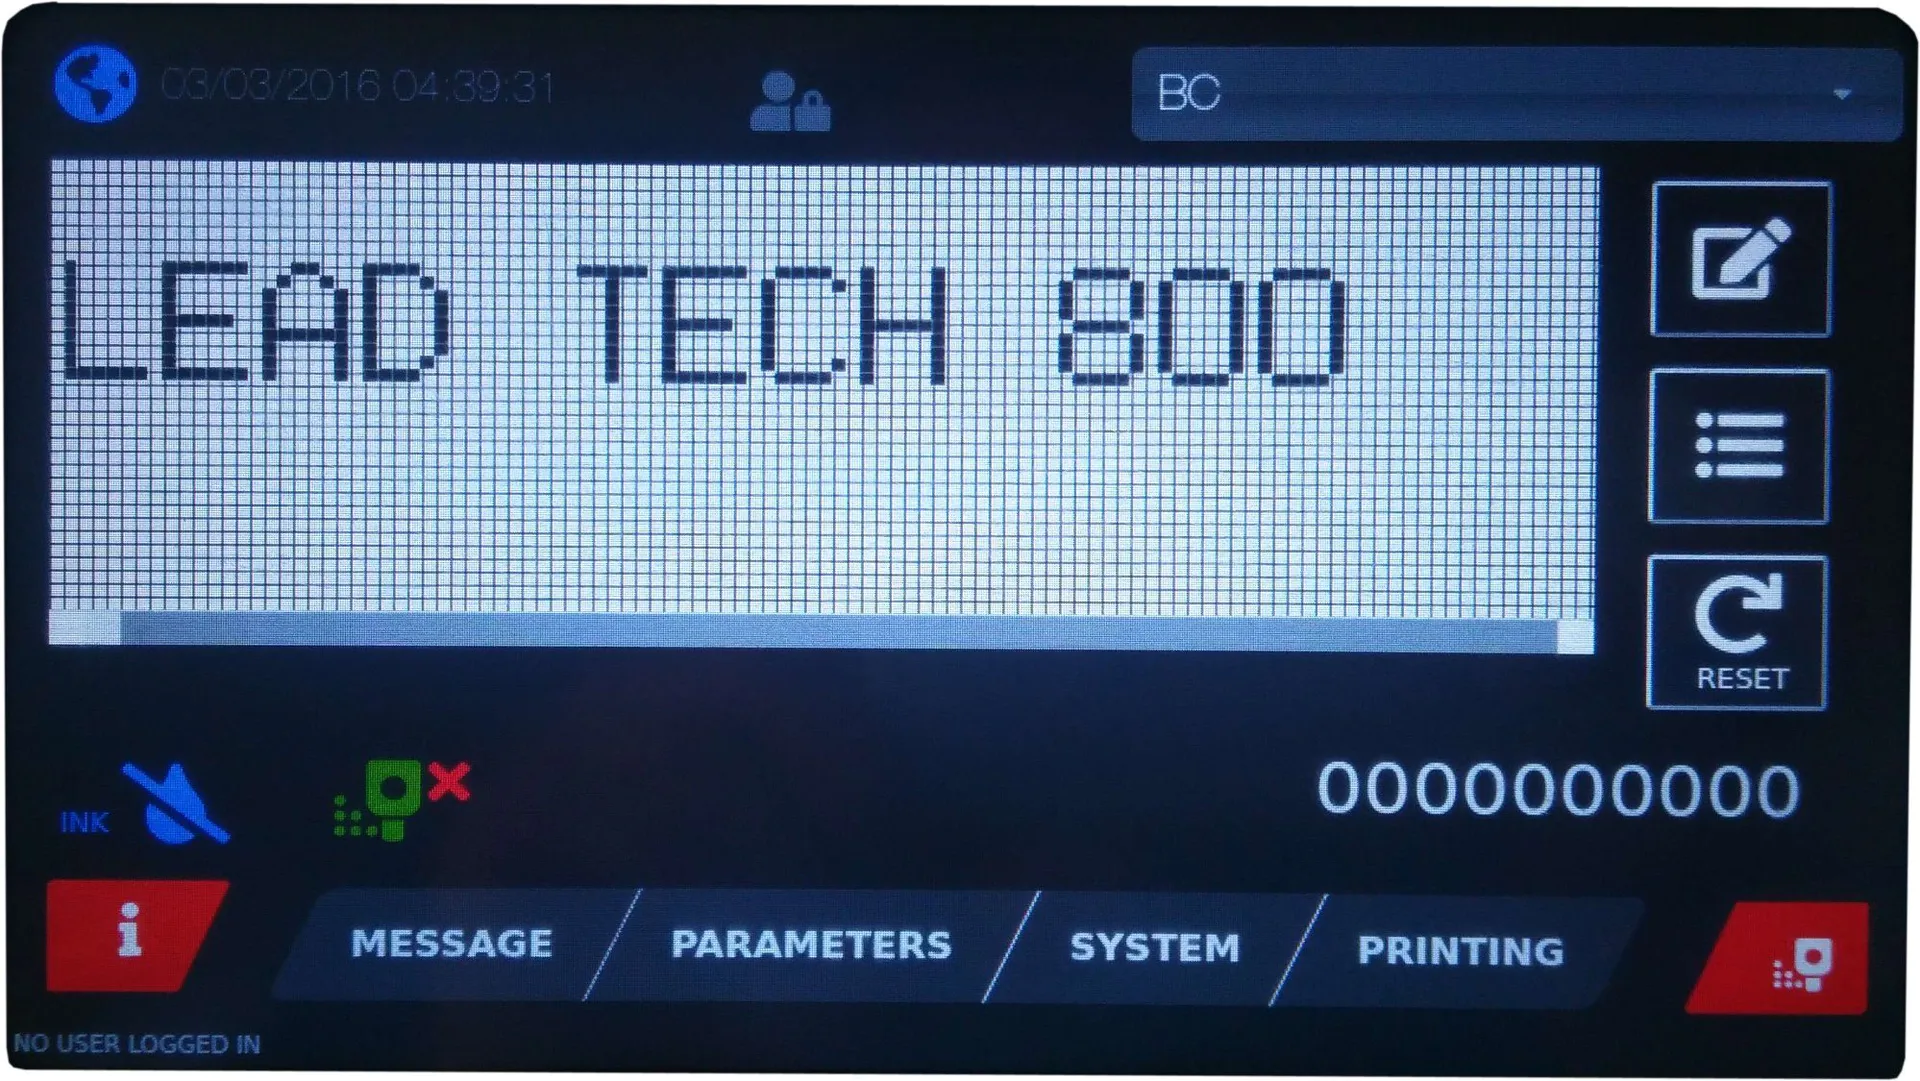 Lead Tech Lt800 Egg Exp Date Coding Cij Inkjet Printer